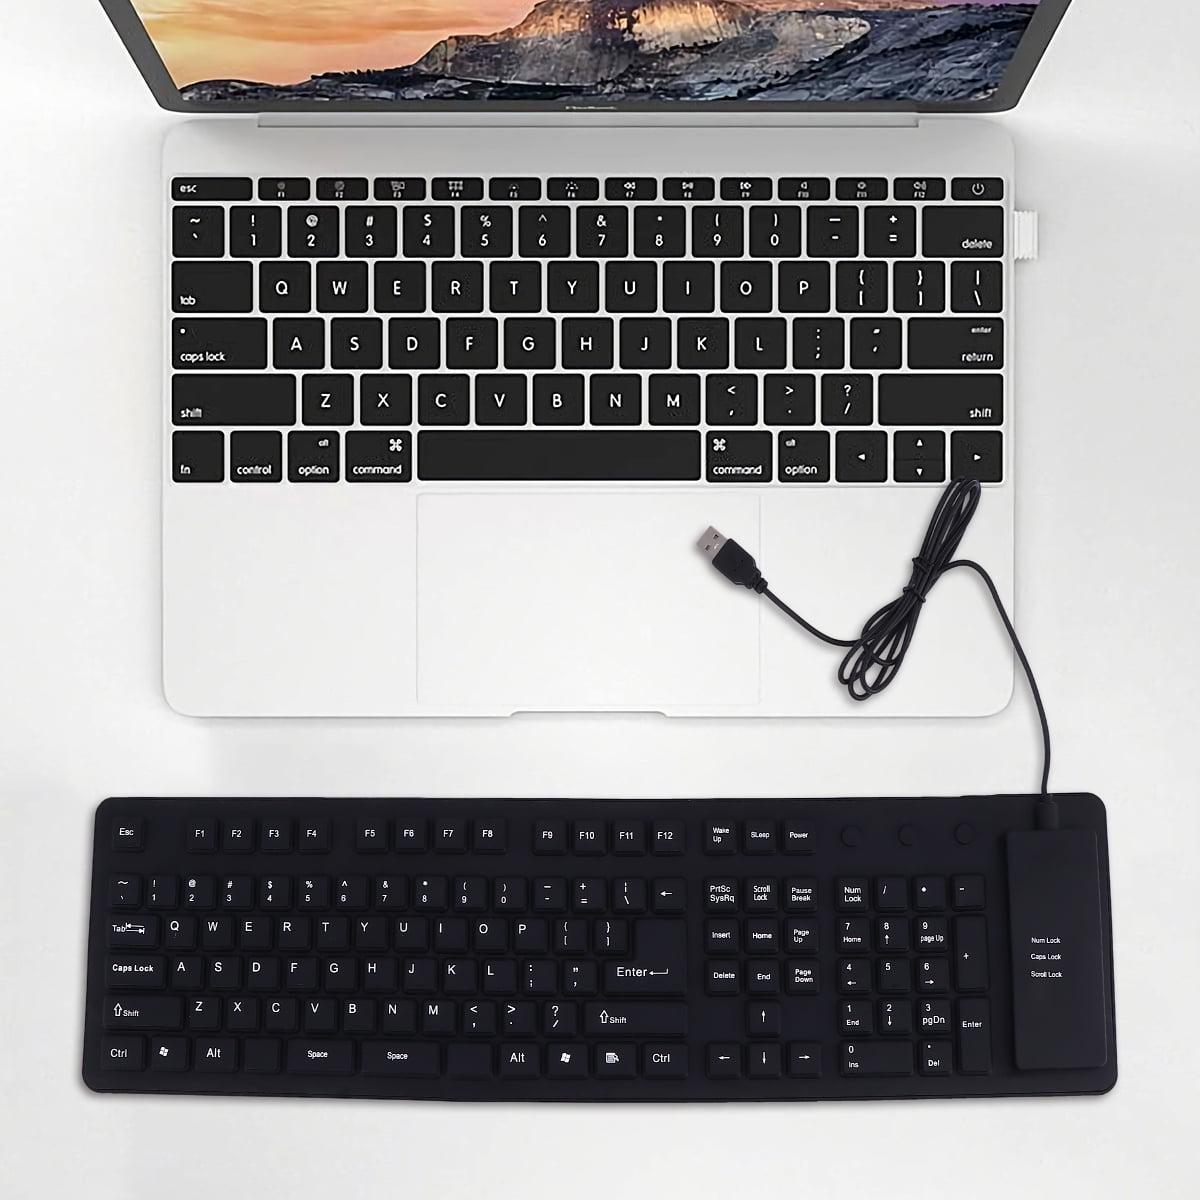 Roll Up Keyboard Computer Waterproof 109 Keys Silent USB Wired Keyboard